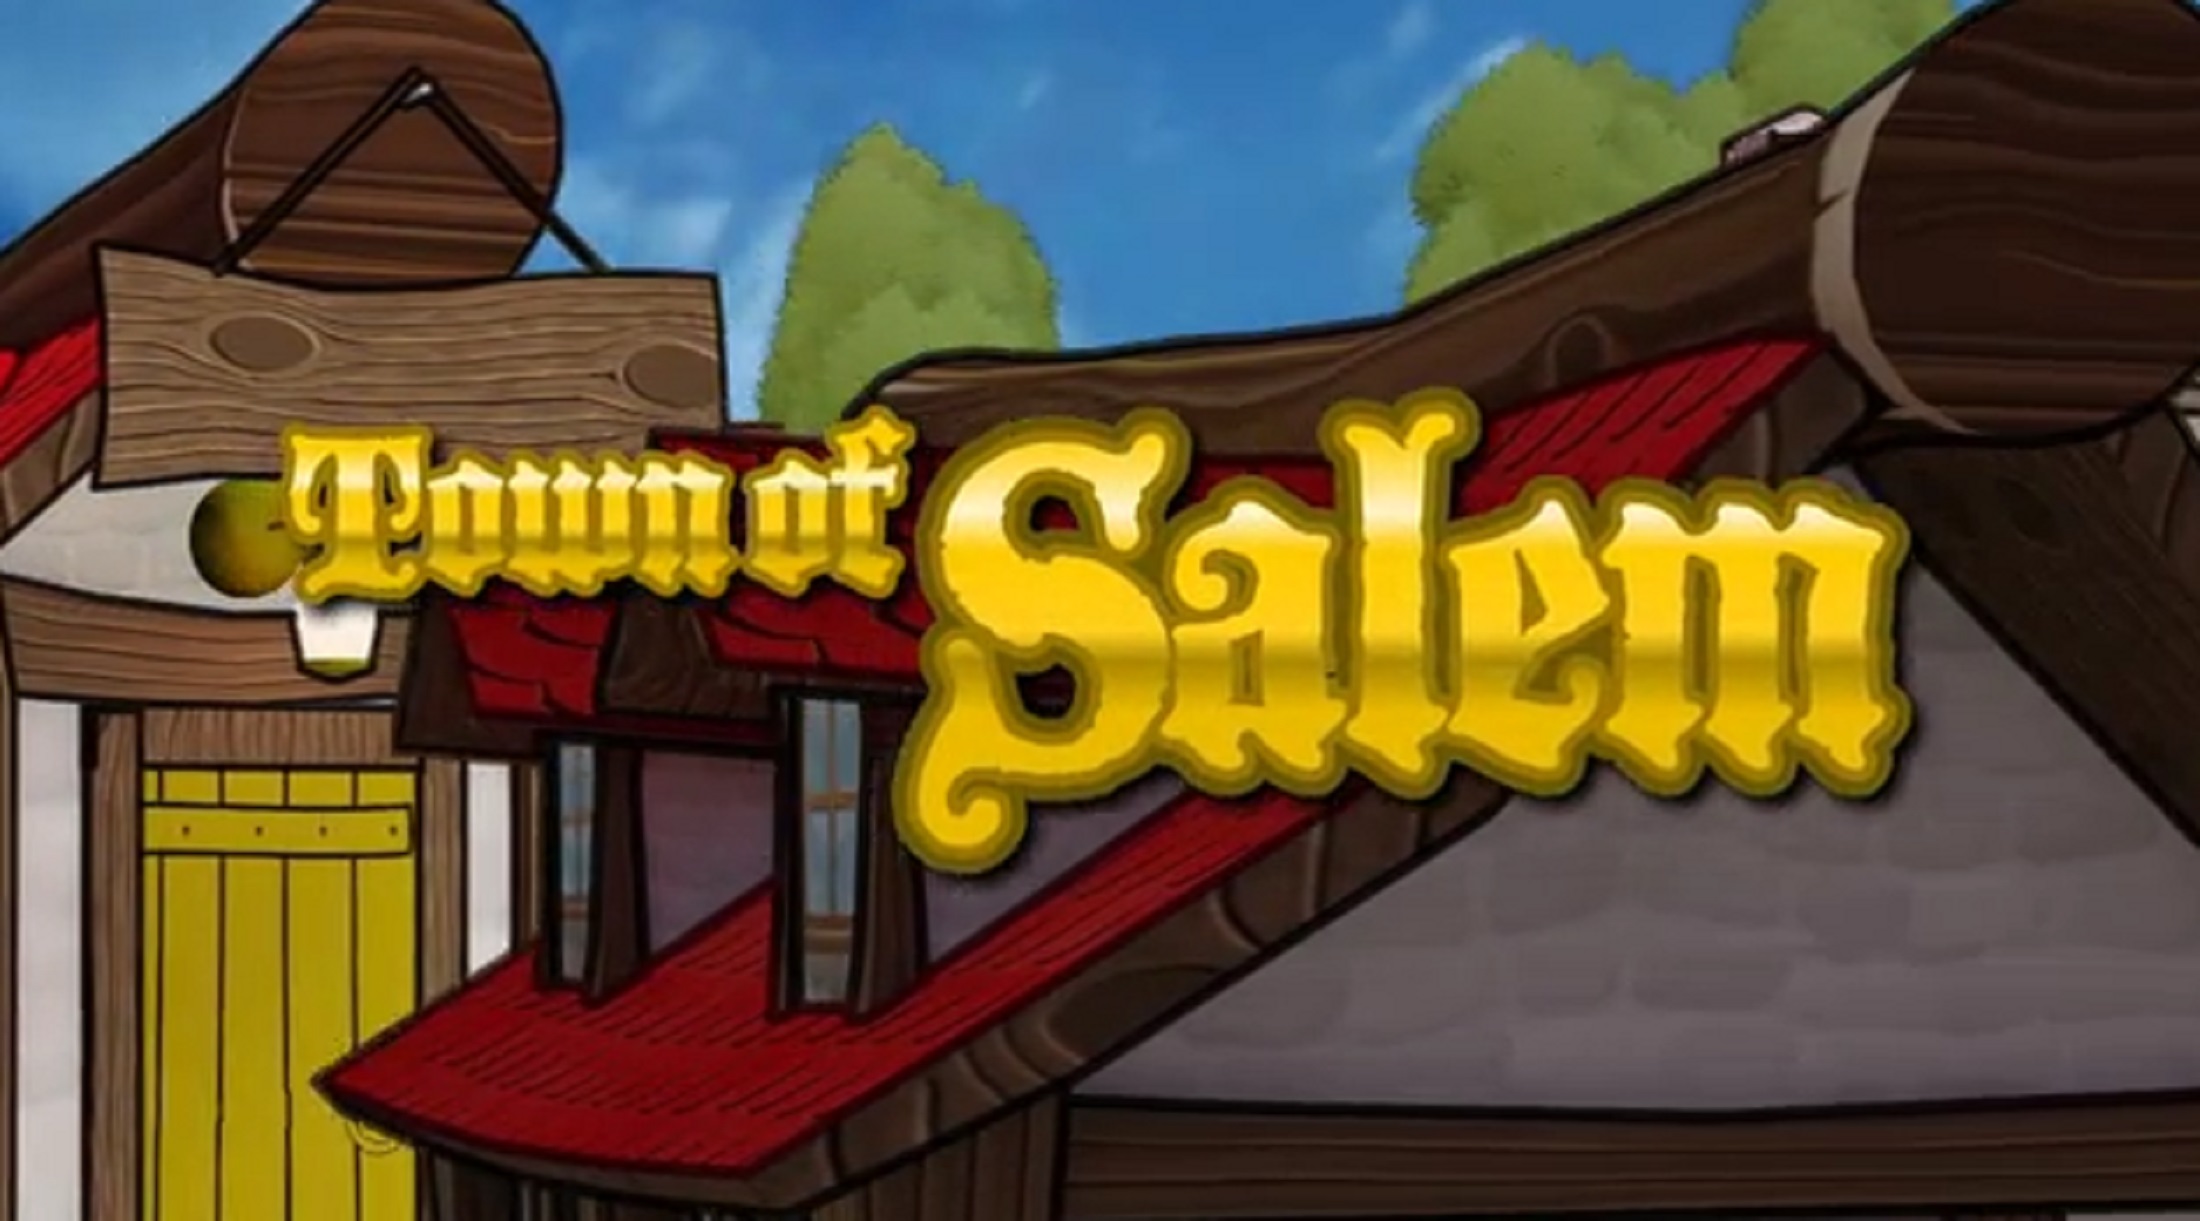 Town of Salem Web, Flash game - ModDB